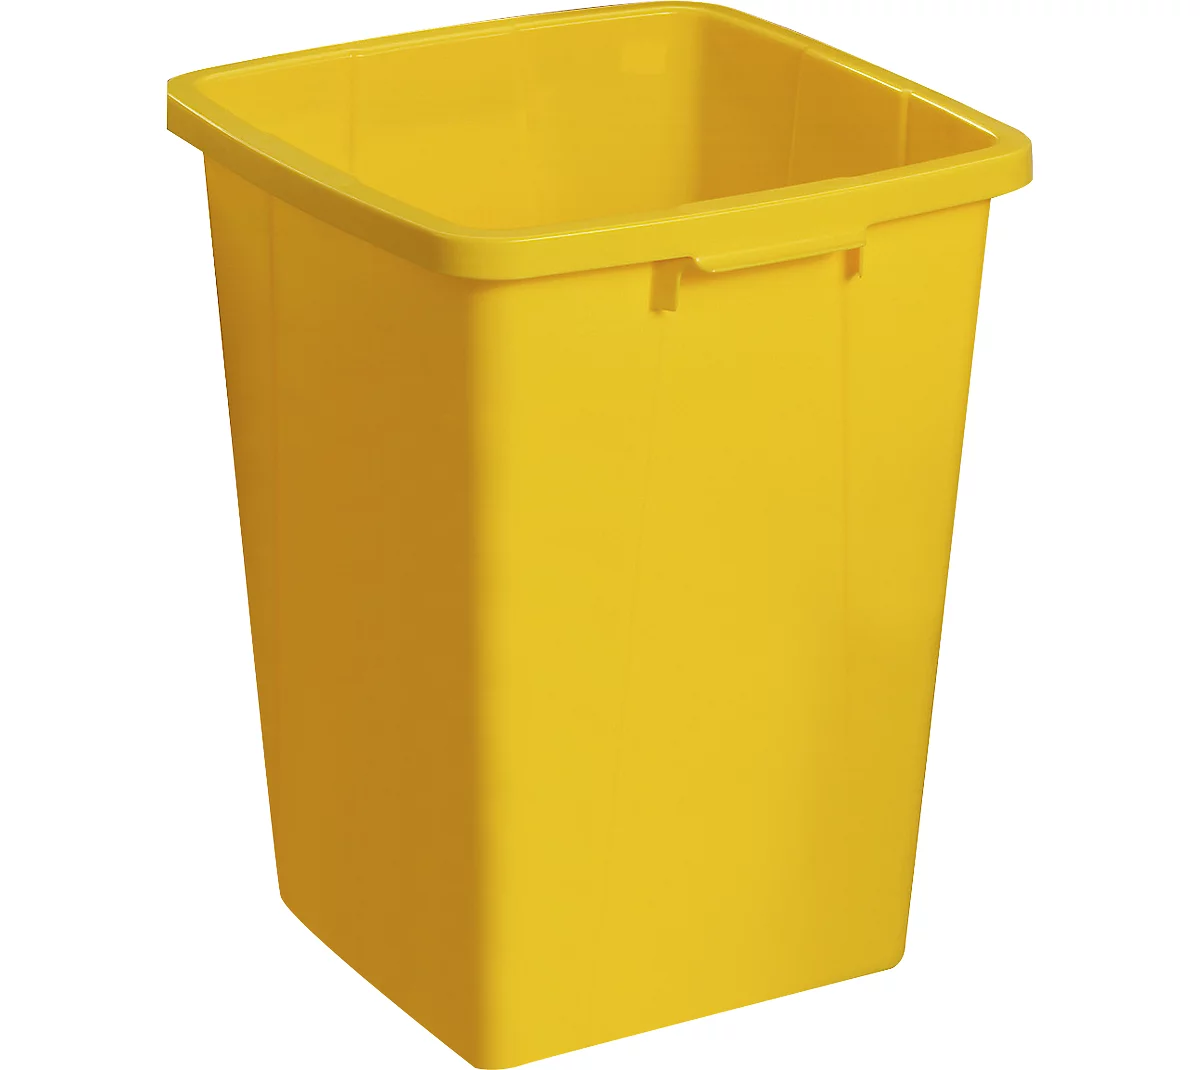 Abfallbehälter ohne Deckel, 90 Liter, gelb